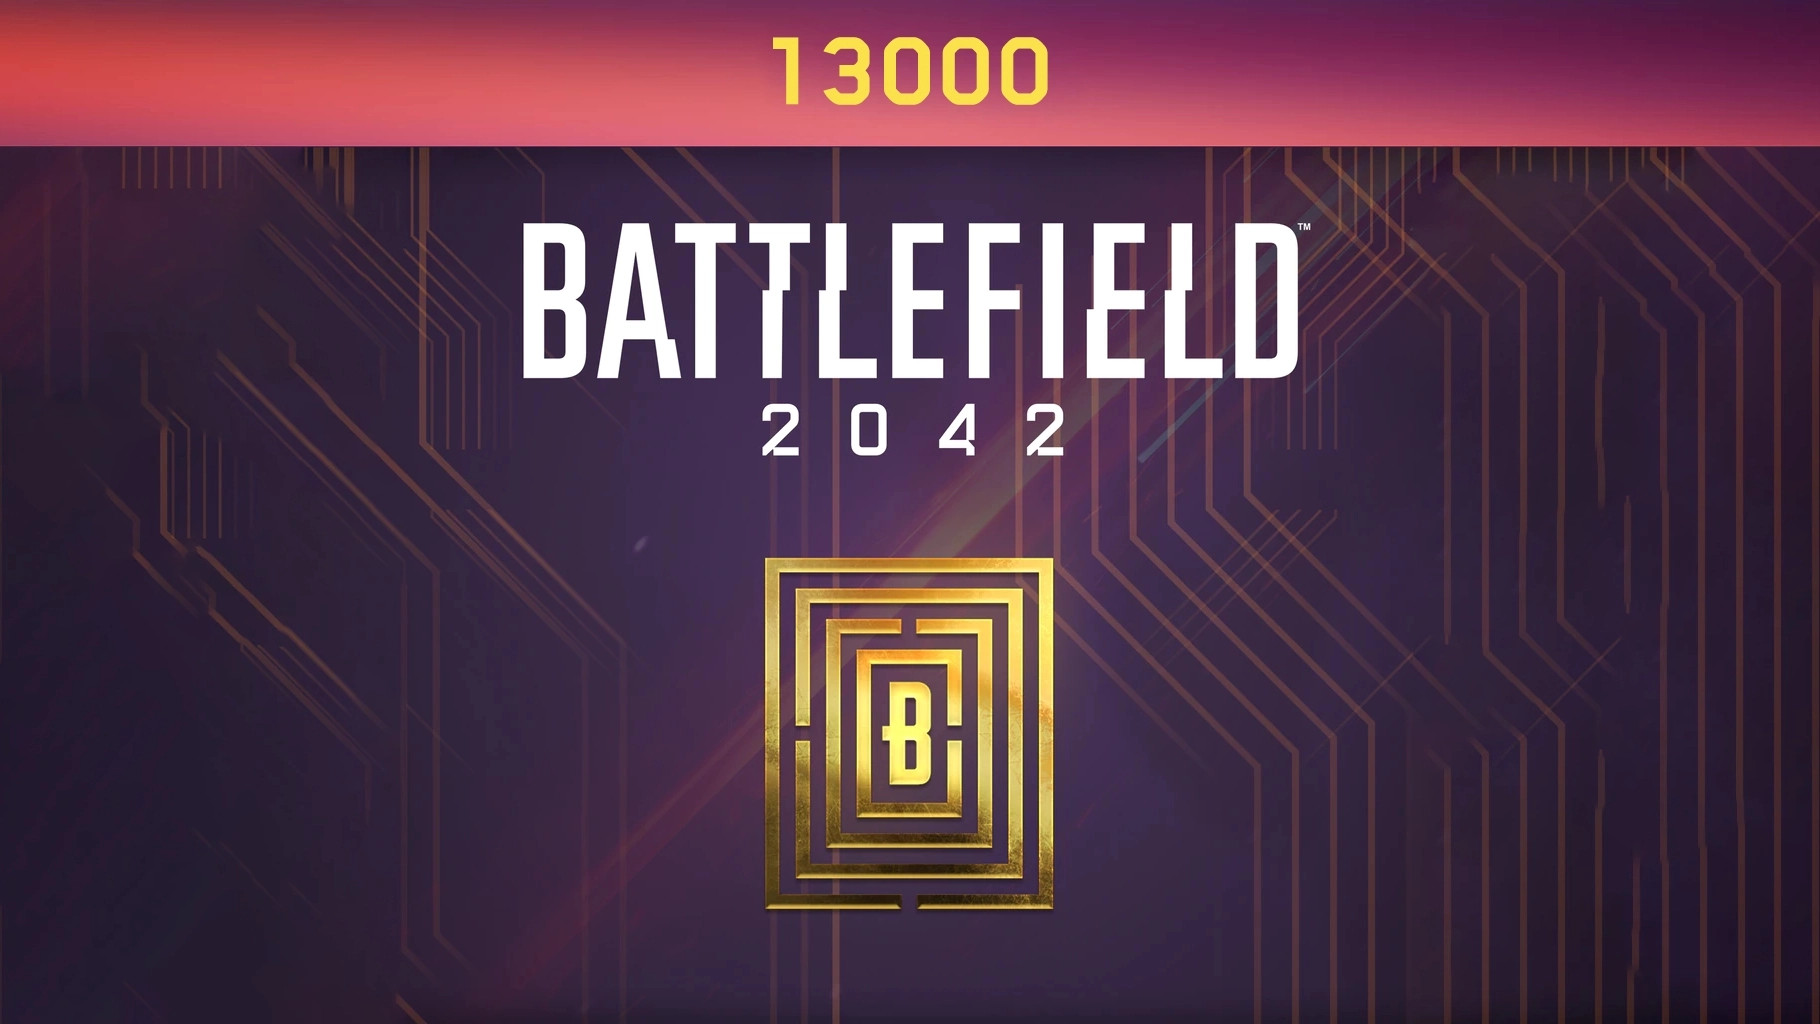 Battlefield 2042 - 13000 BFC Balance XBOX One / Xbox Series X|S CD Key, 96.6$